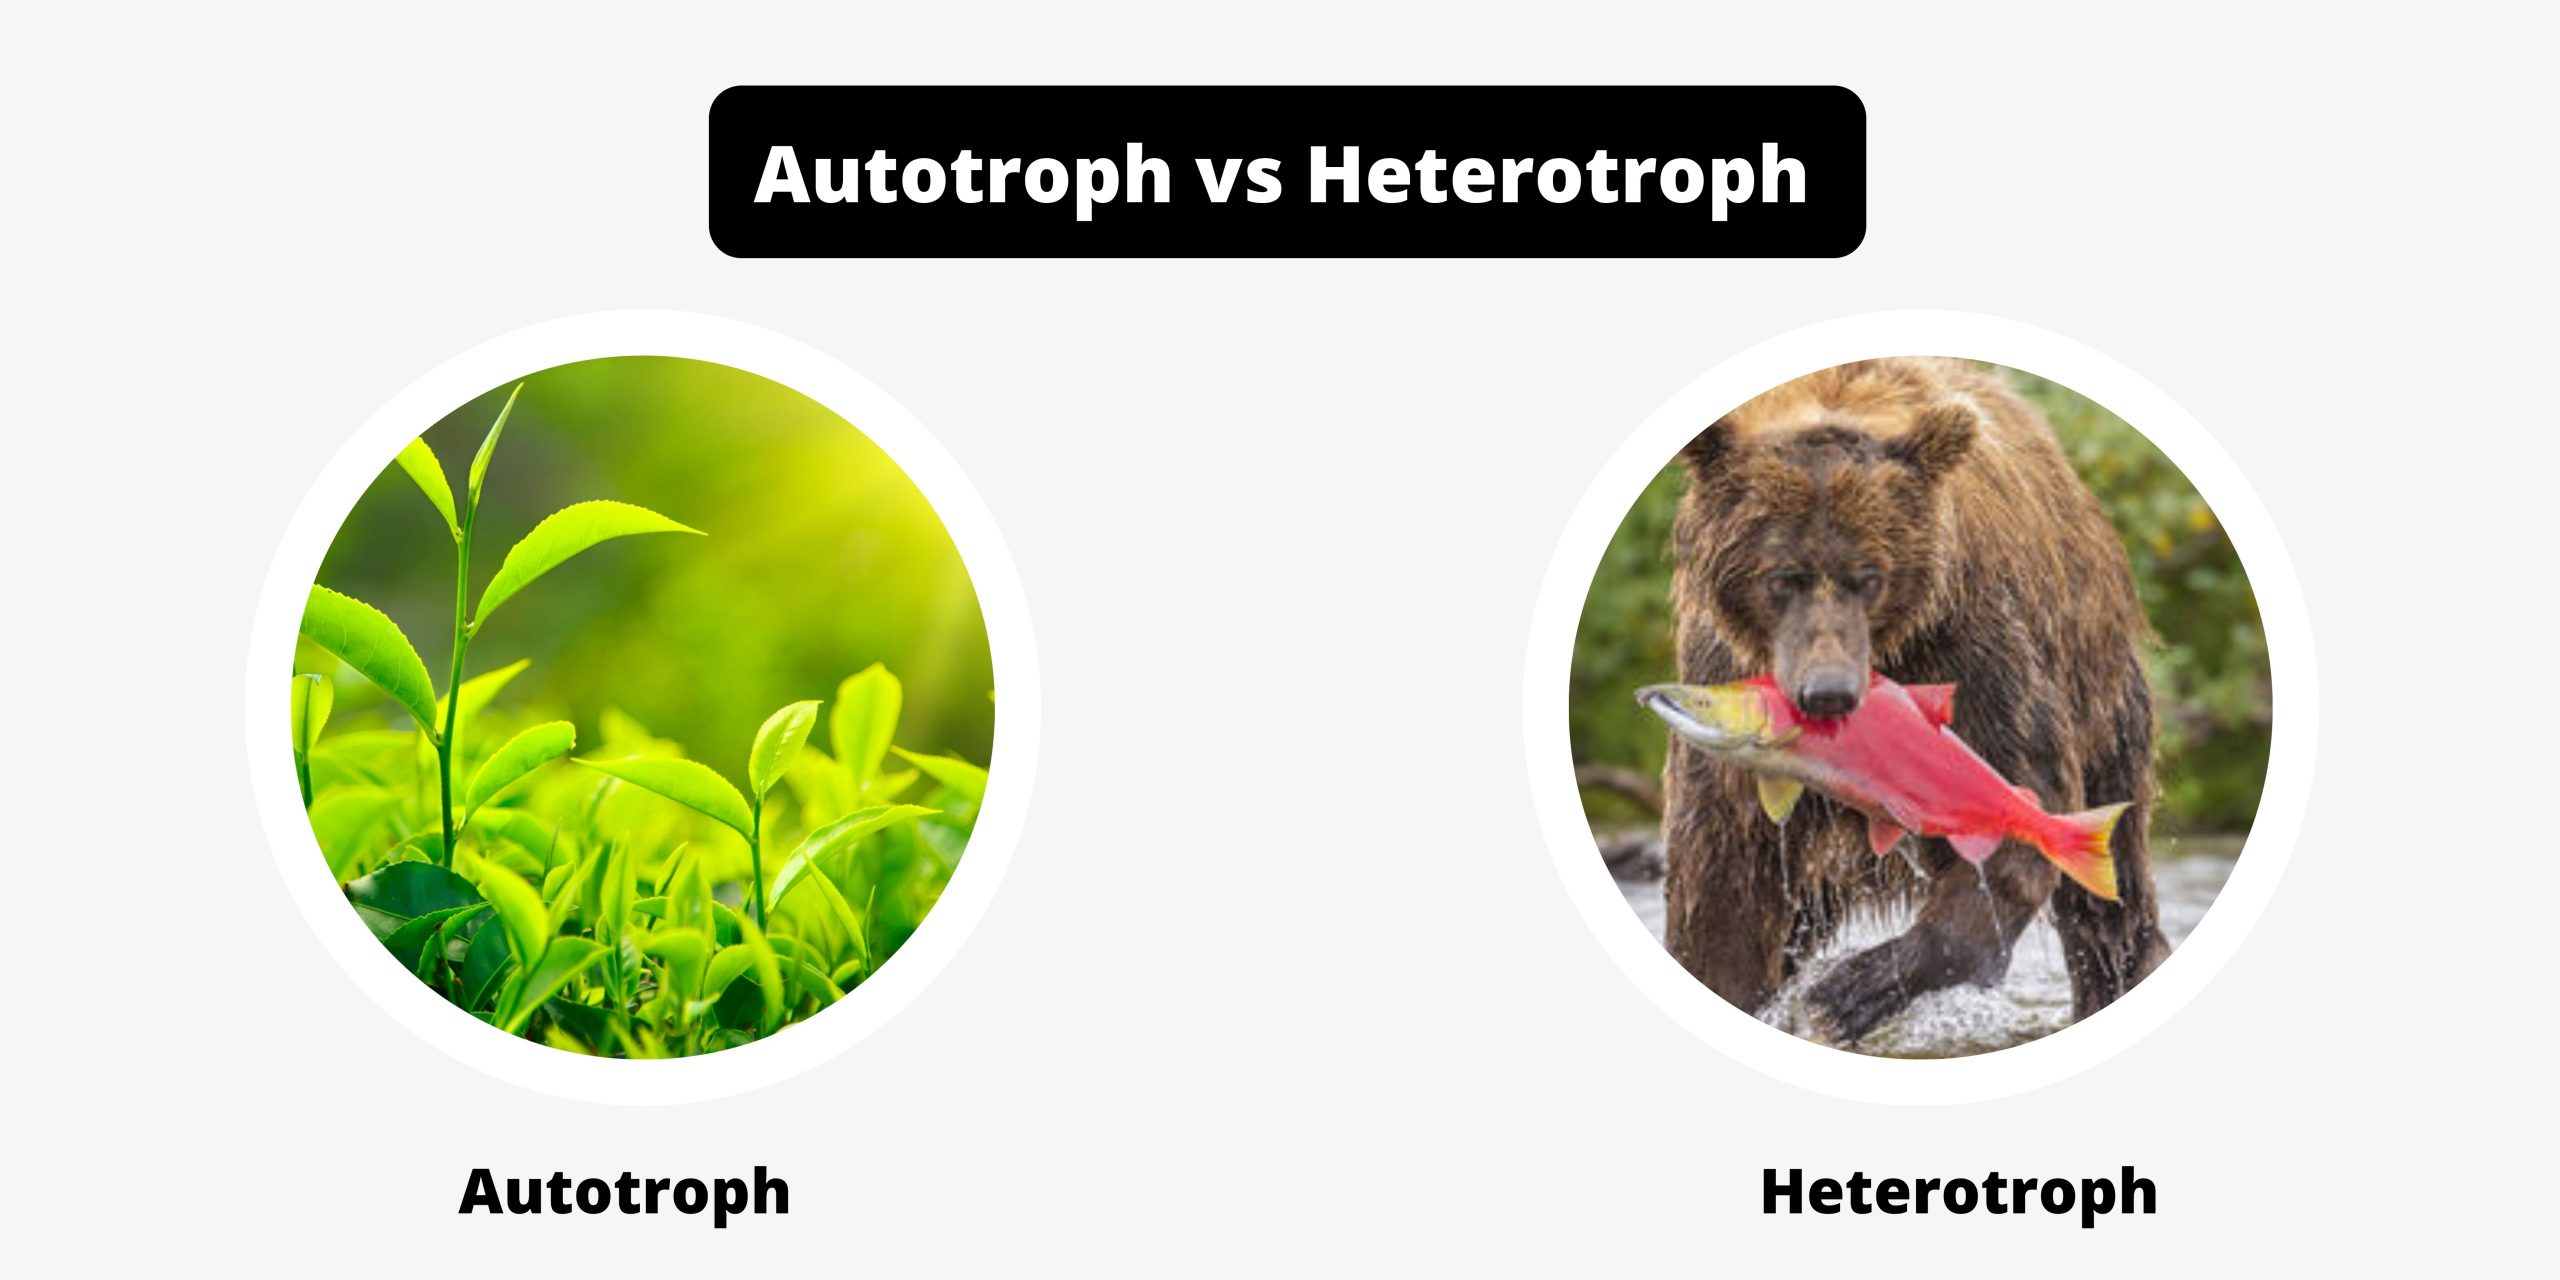 Differences Between Autotroph and Heterotroph